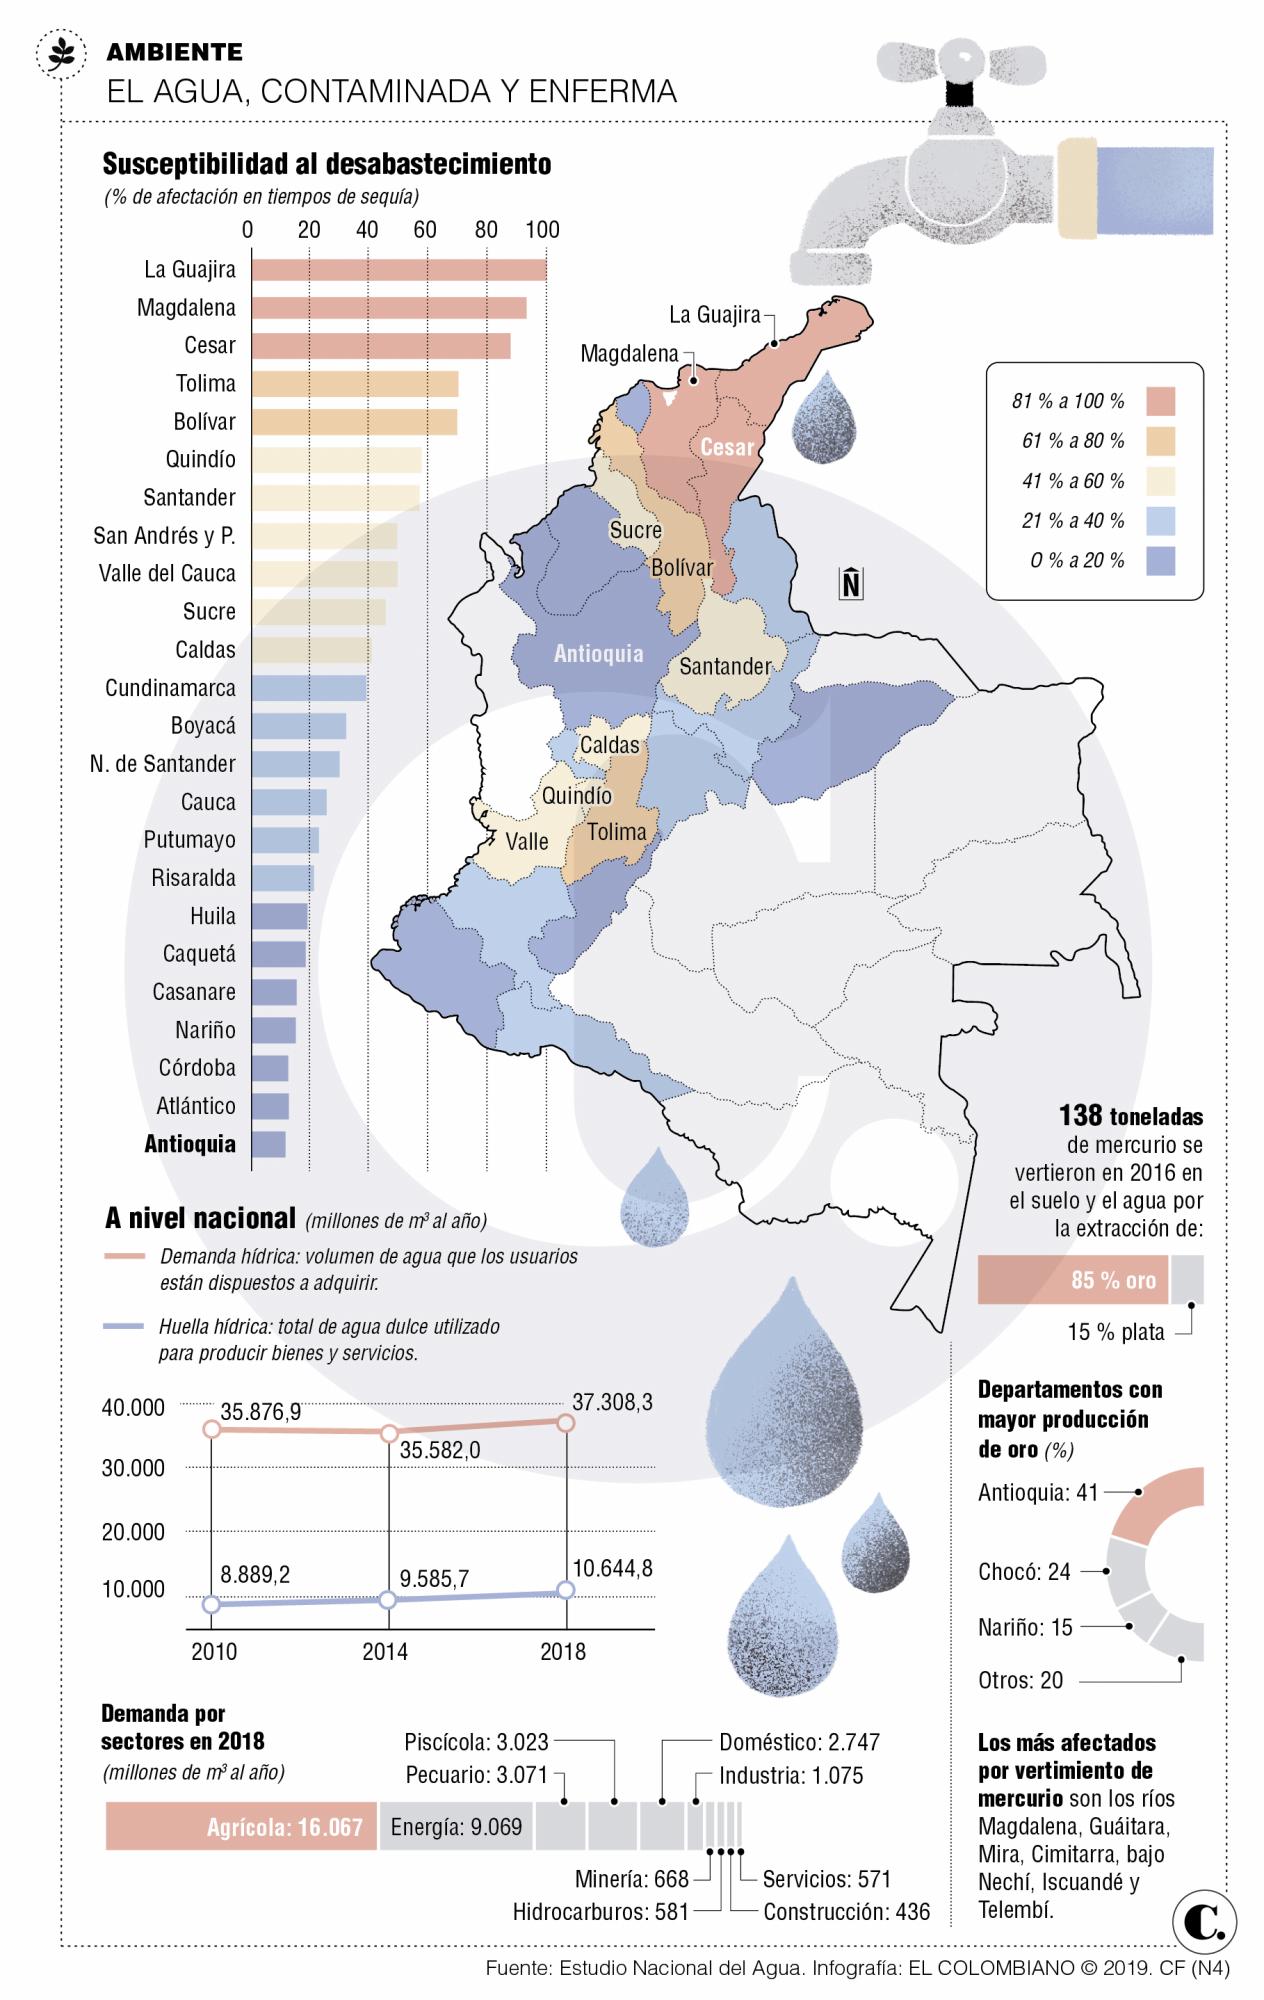 11 millones de personas se quedarían sin agua